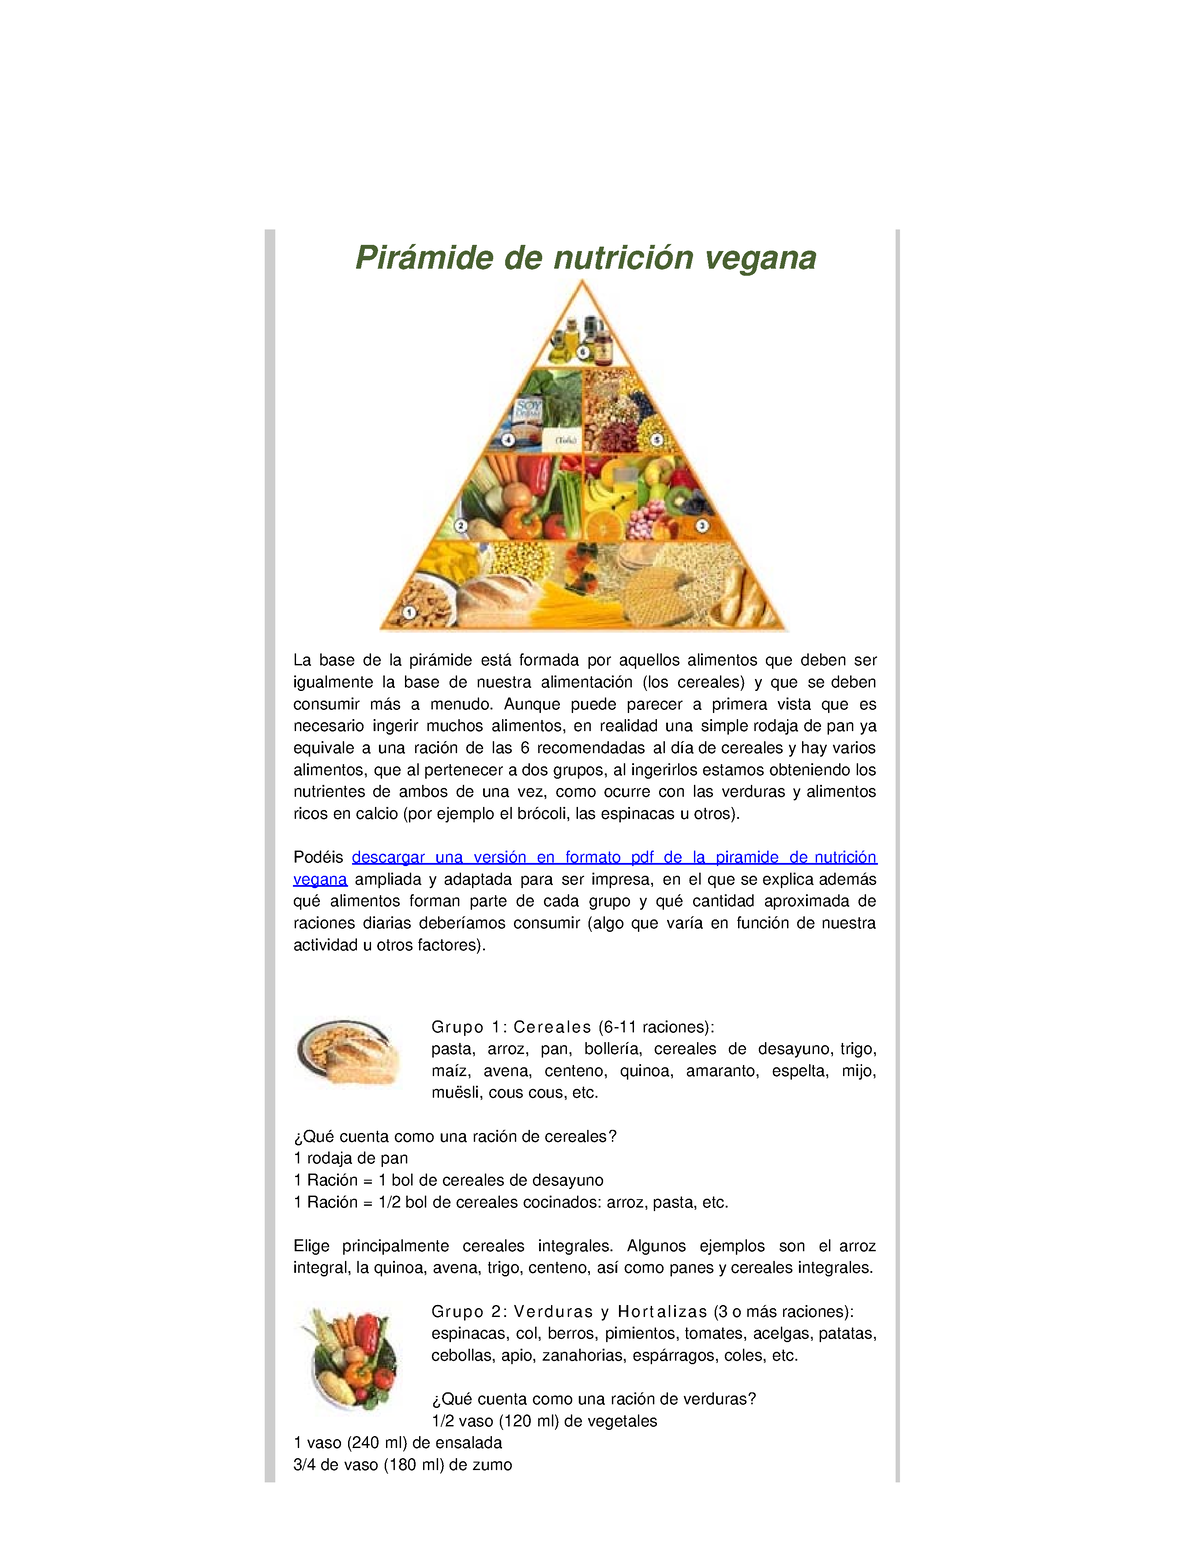 Piramide De Nutricion Vegana Pirámide De Nutrición Vegana La Base De La Pirámide Está Formada 1533